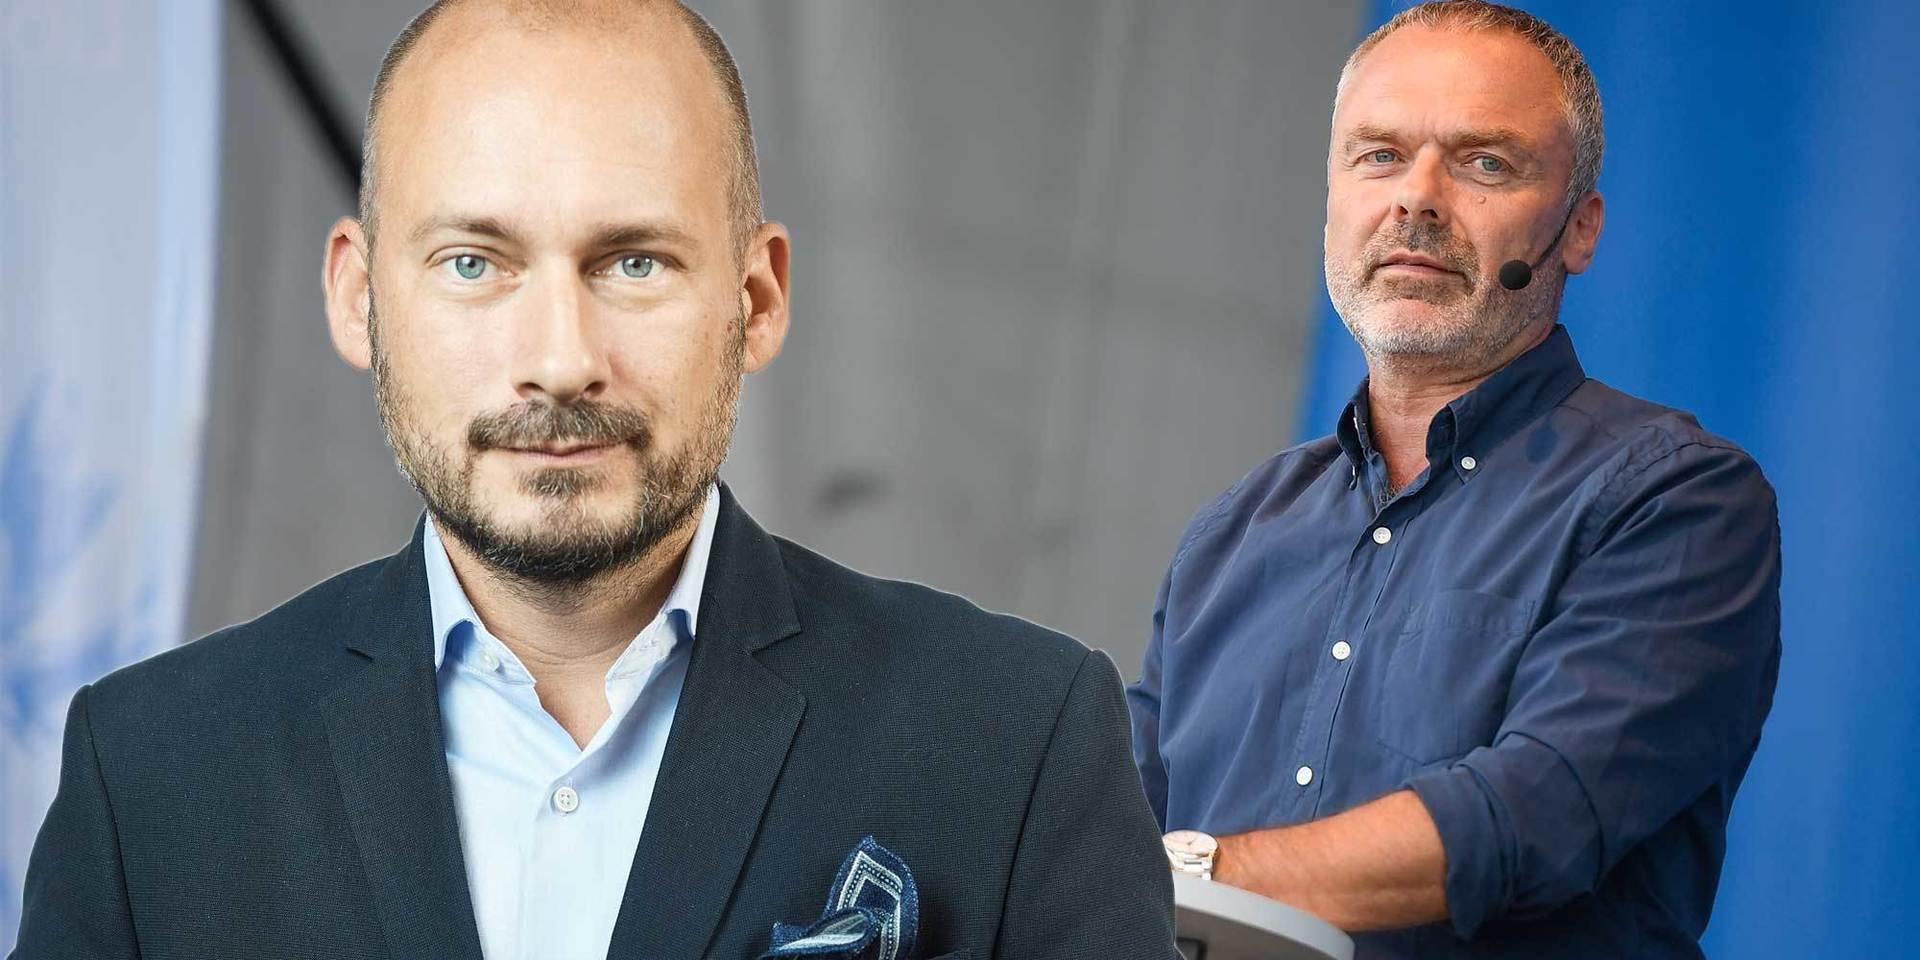 Blå skjorta - blå politik. Jan Björklund vill sänka skatter.